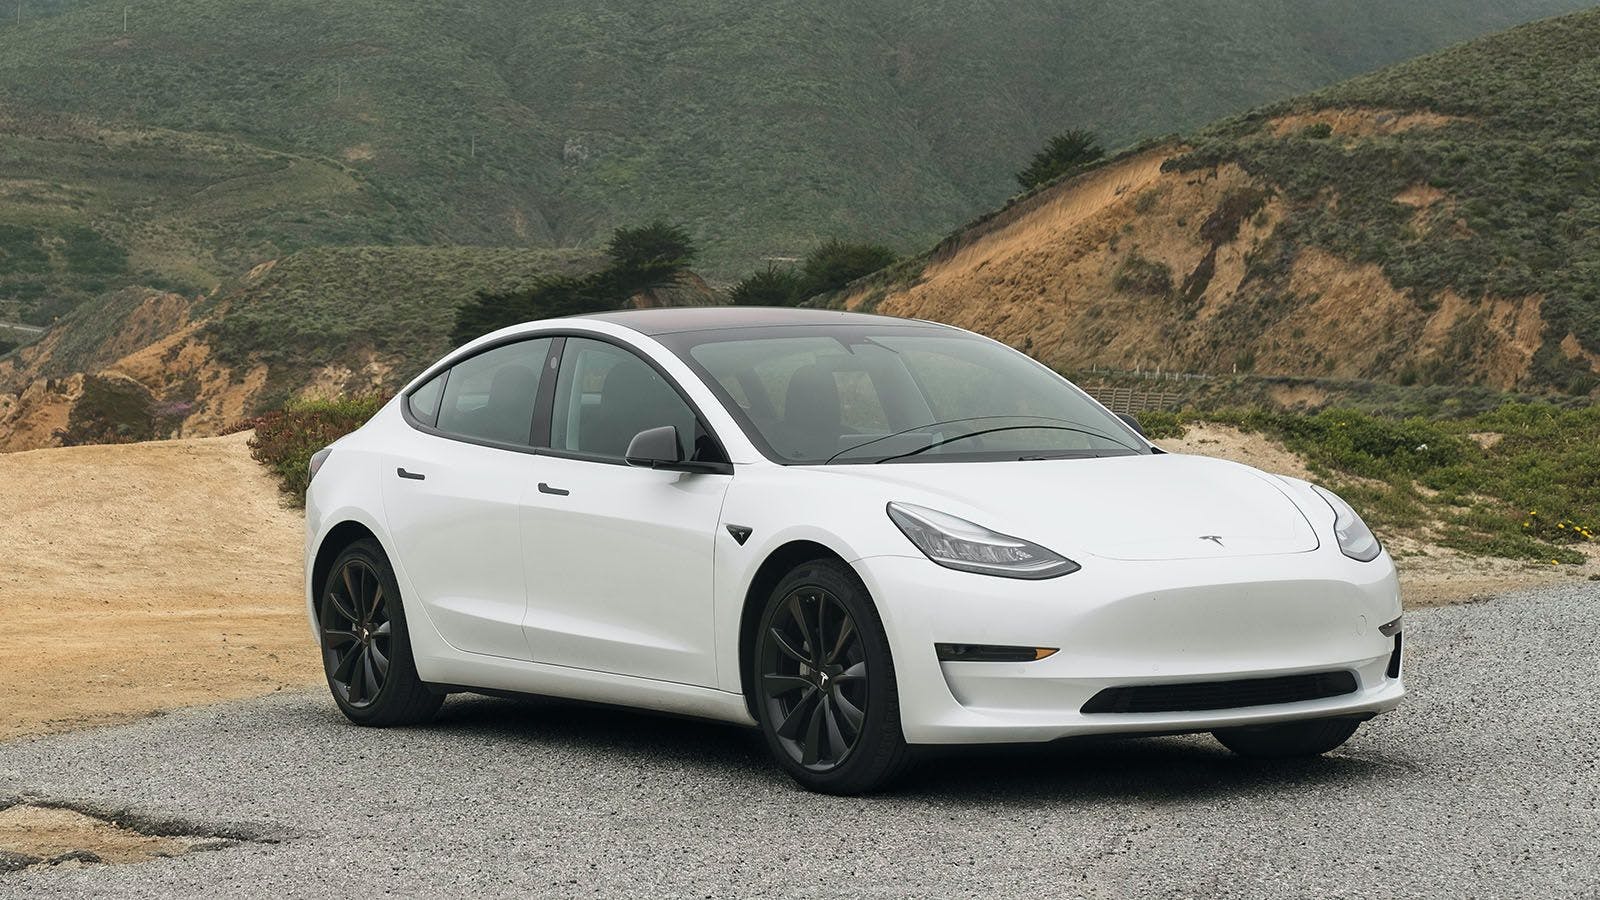 Sälja Tesla Model 3 - här får du hjälp